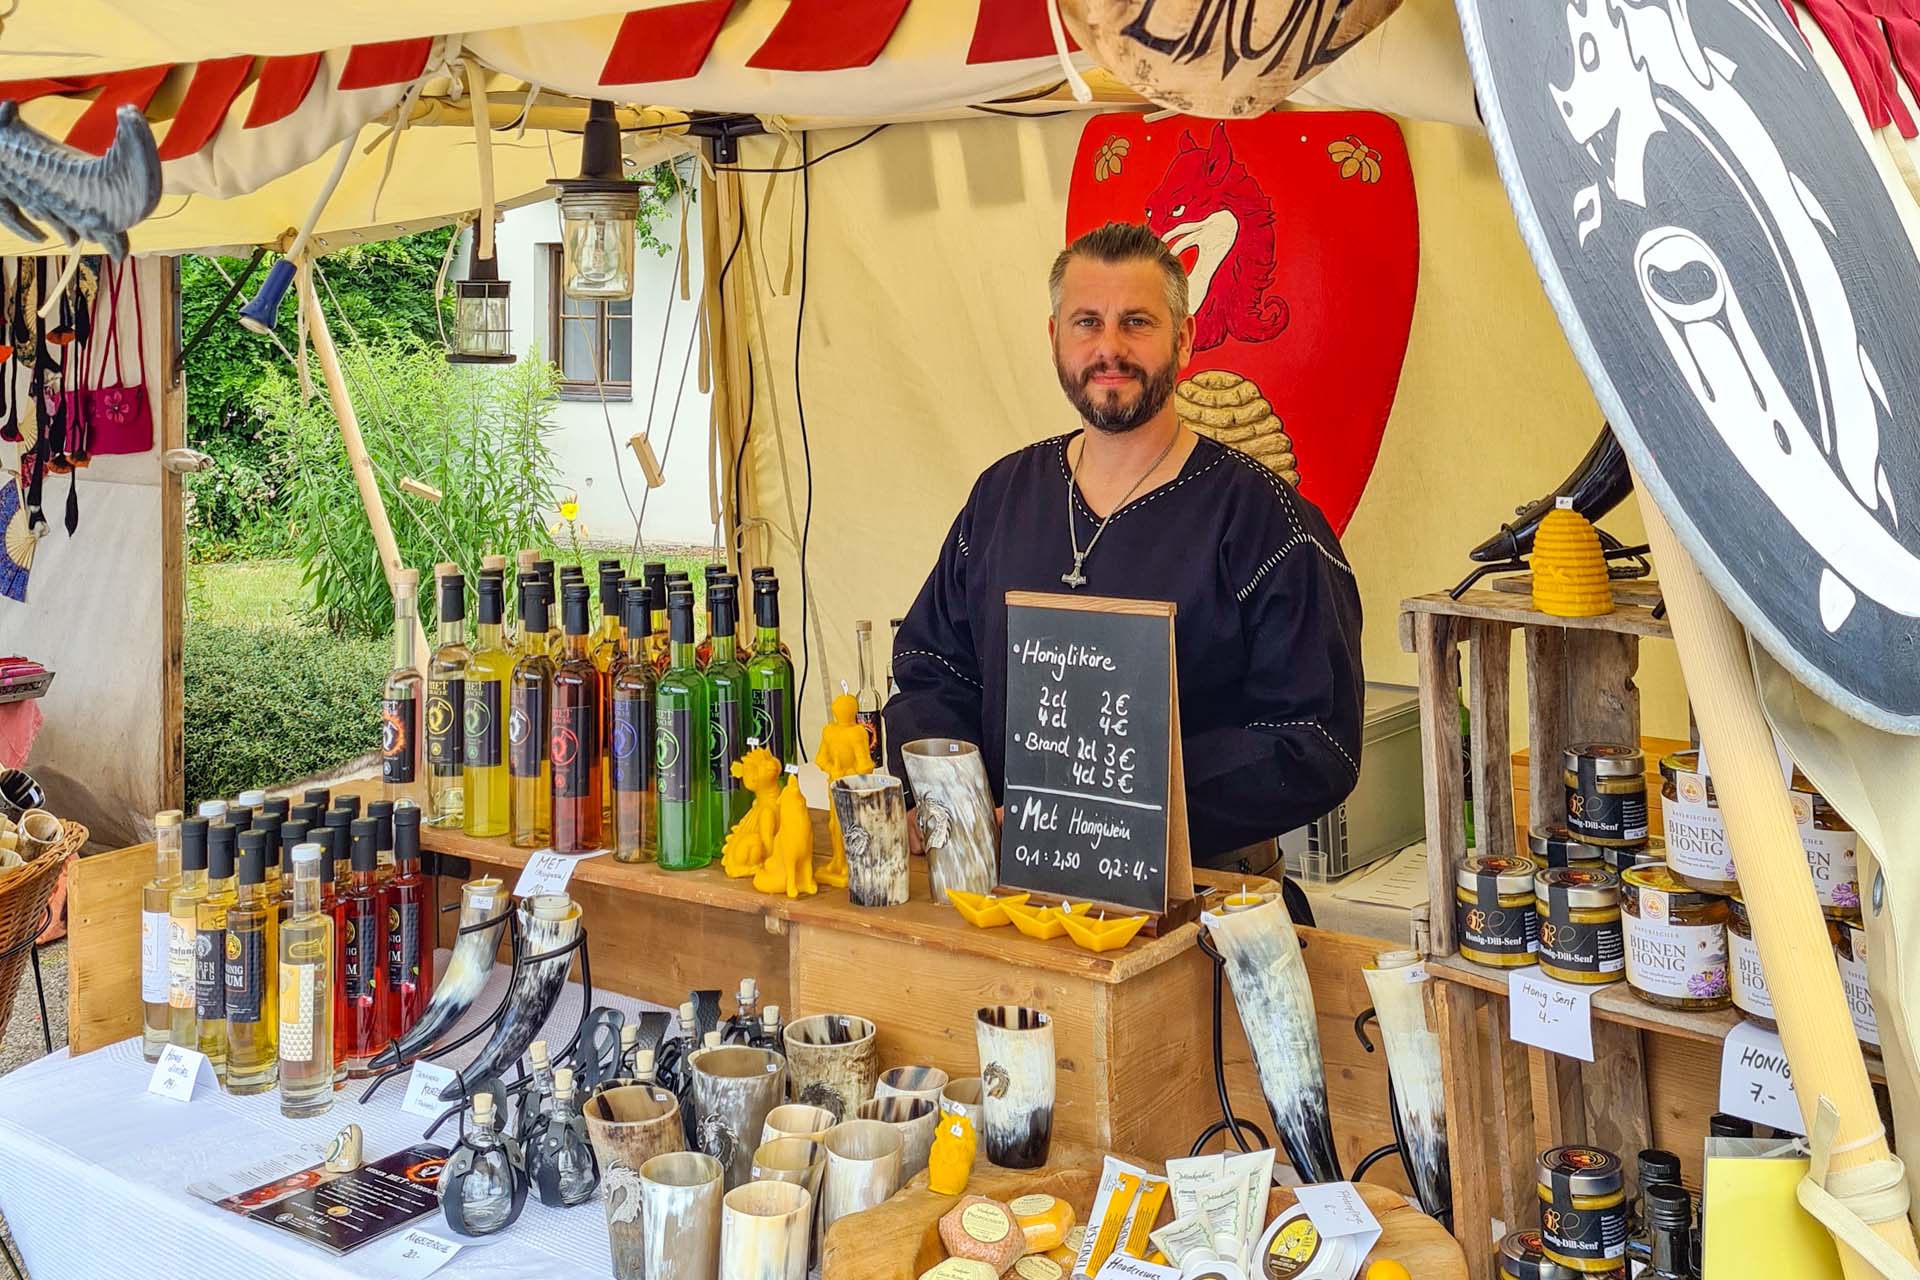 Wikinger am Mittelaltermarktstand mit Metflaschen und Honigprodukten